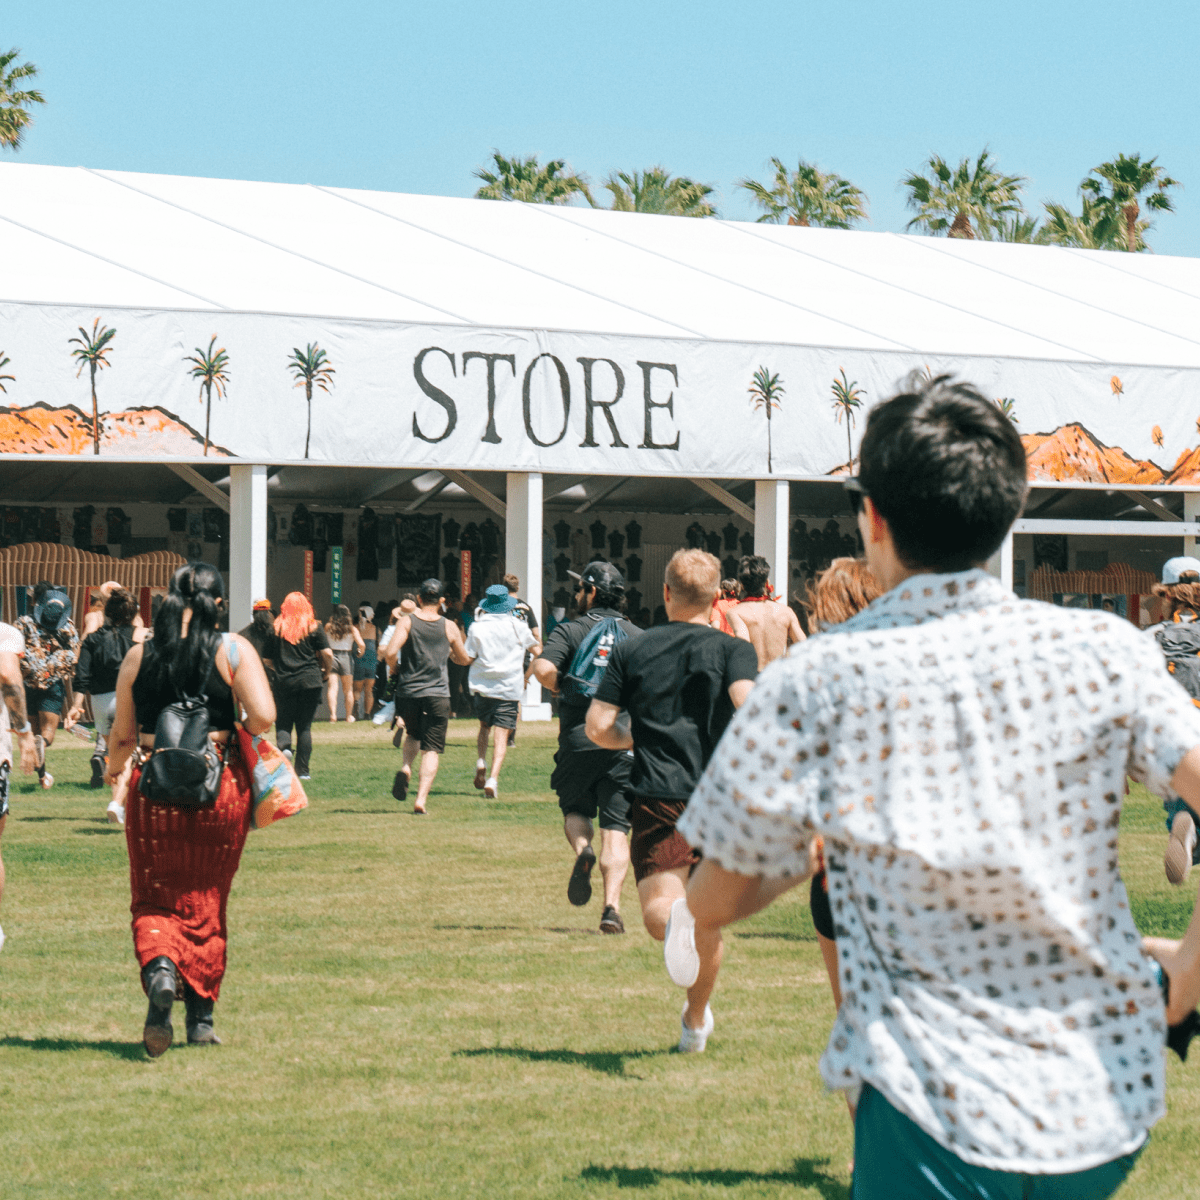 Fans run toward Coachella store